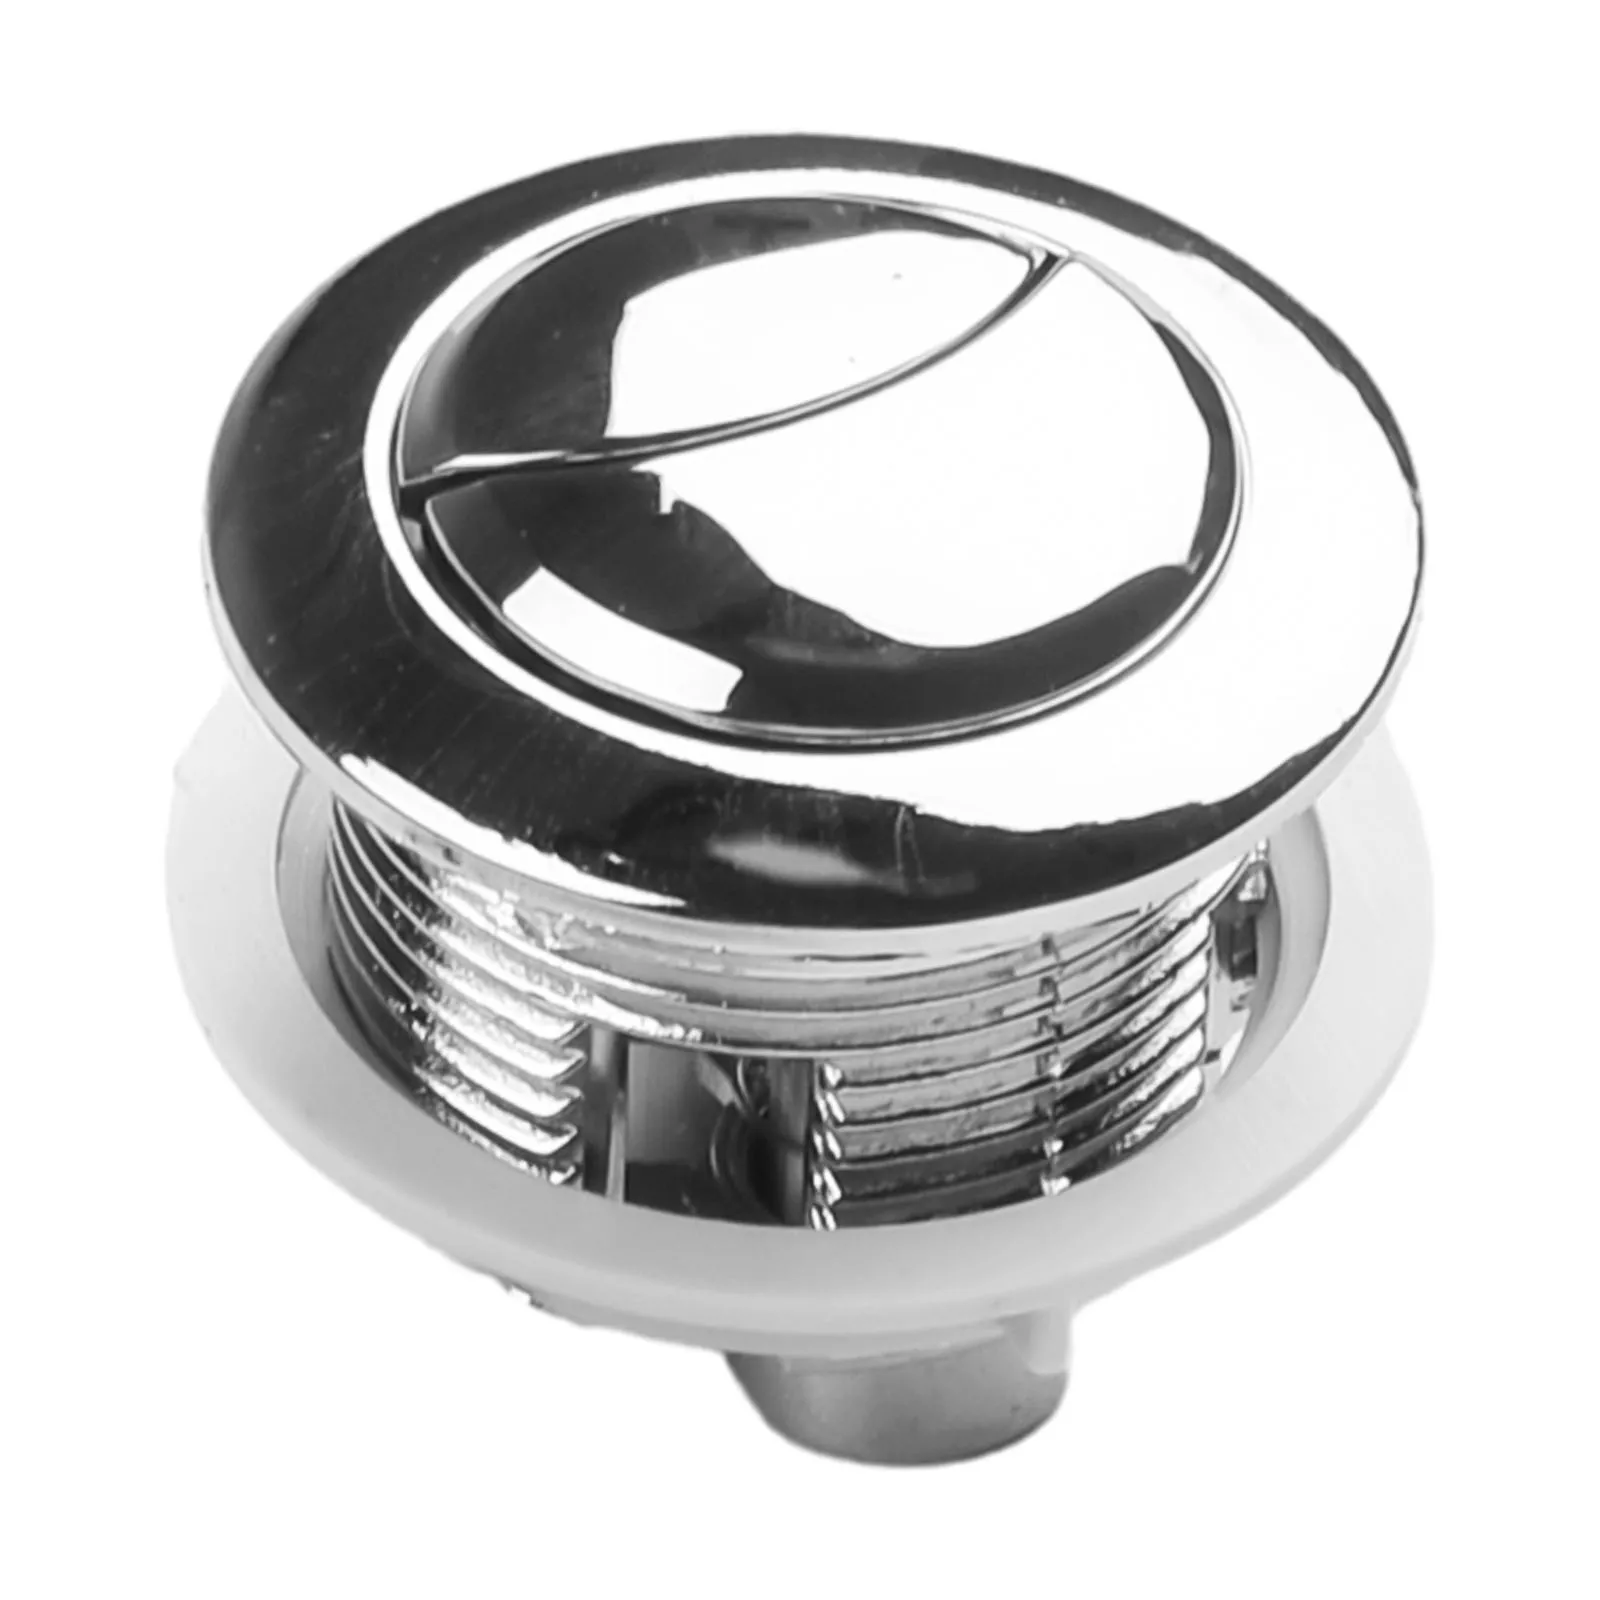 Botón pulsador duradero para inodoro, accesorio de baño para cisterna, botón pulsador más cercano